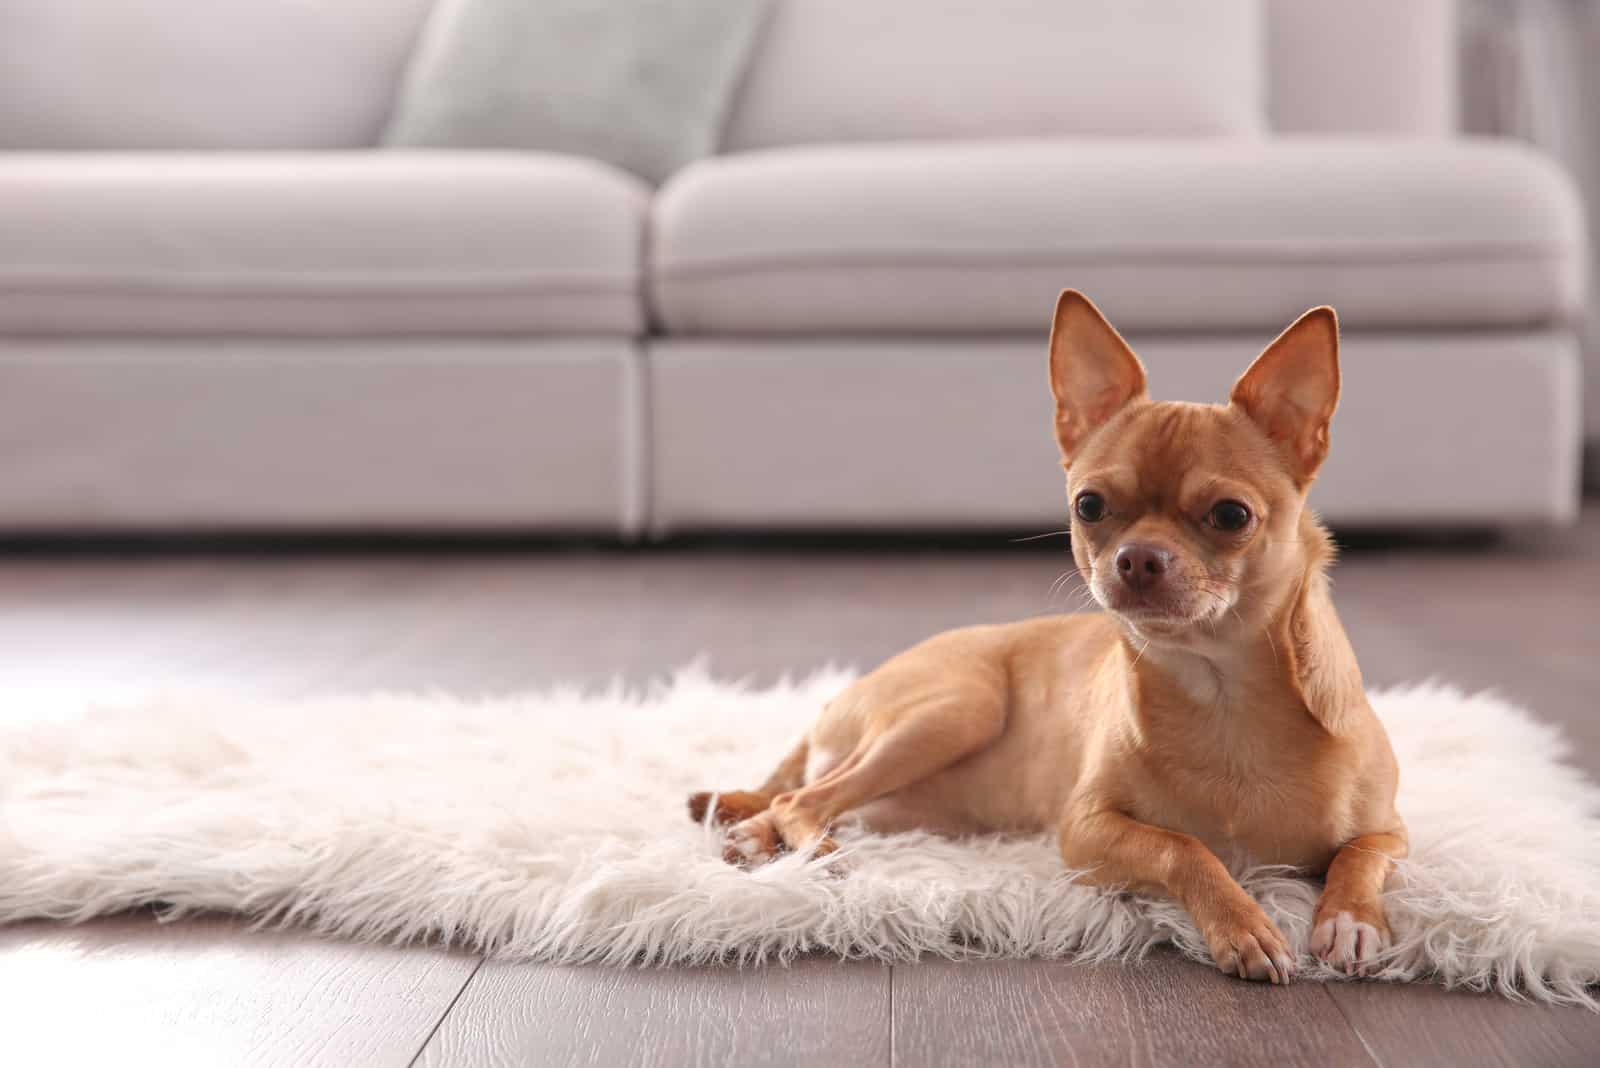 Cute Chihuahua dog lying on warm floor indoors